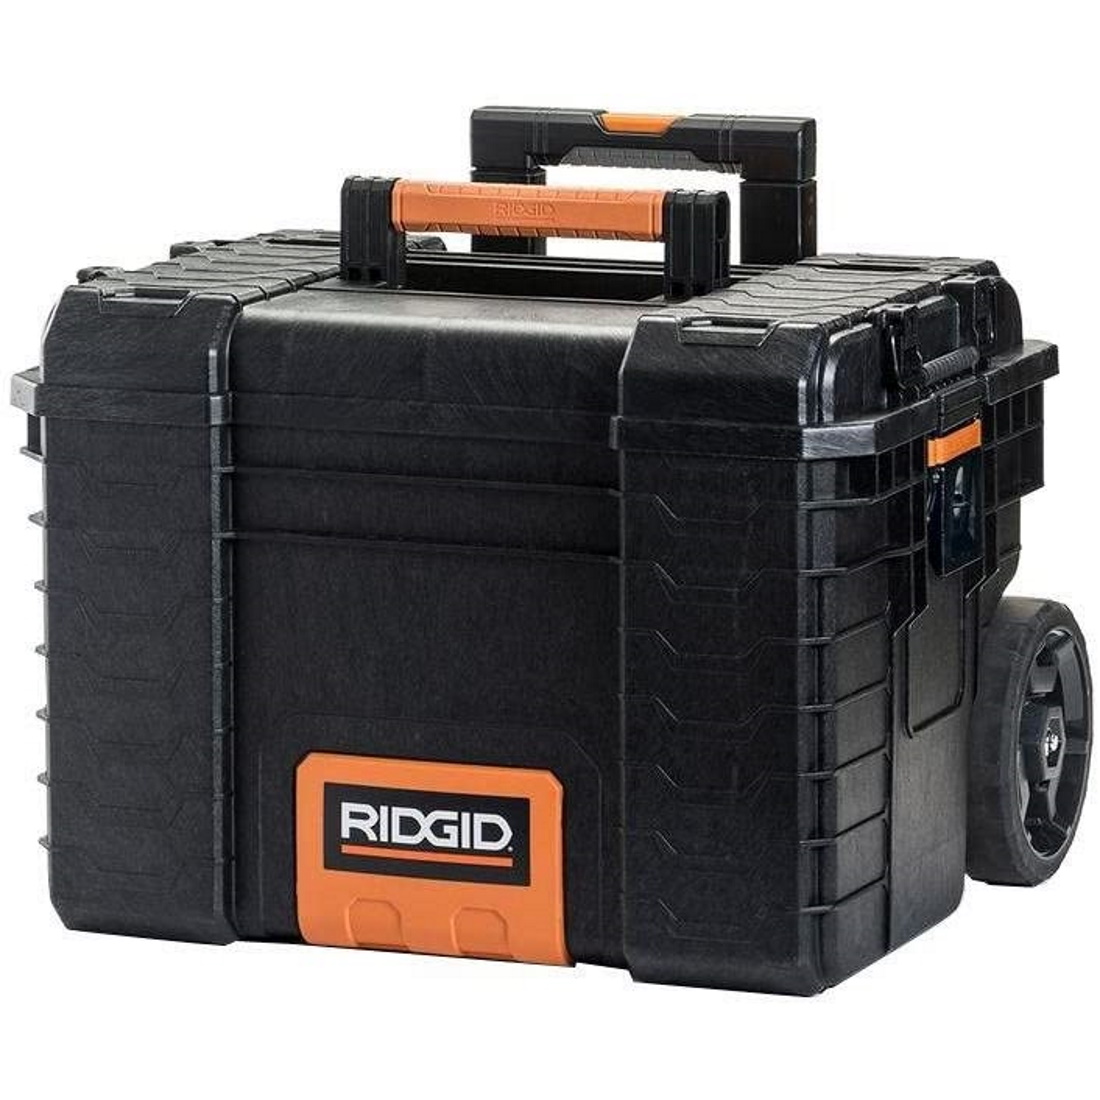 Ridgid 22 pro organizer tool box full depth foam insert